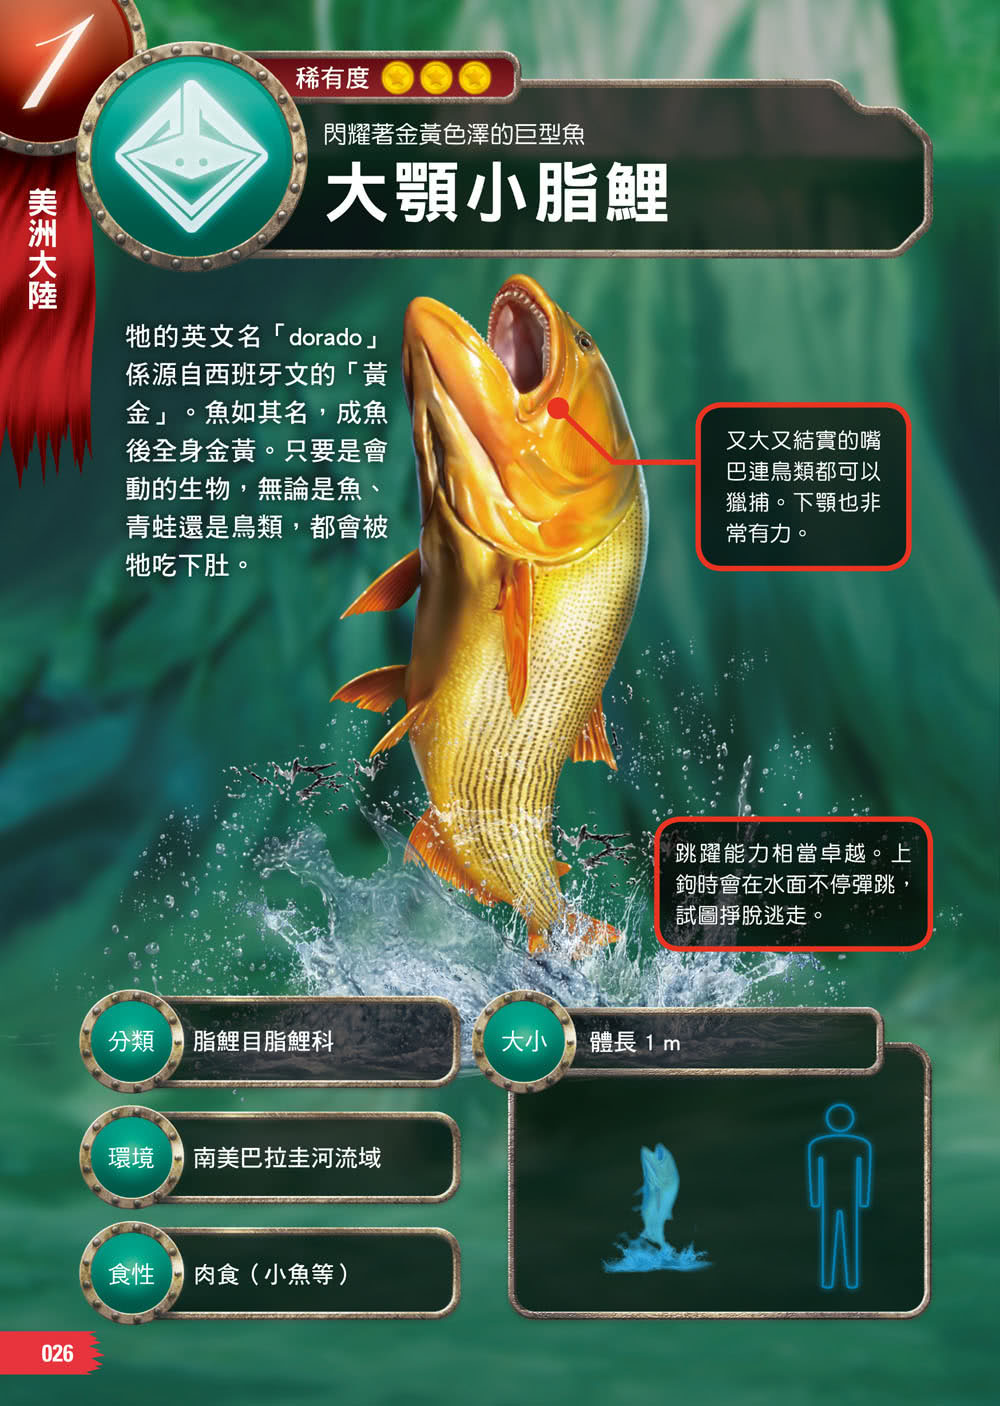 怪魚珍魚大百科 用鰾呼吸 用鰭走路 泳速可達每小時100公里 嚇 牠們真的是魚嗎 Momo購物網